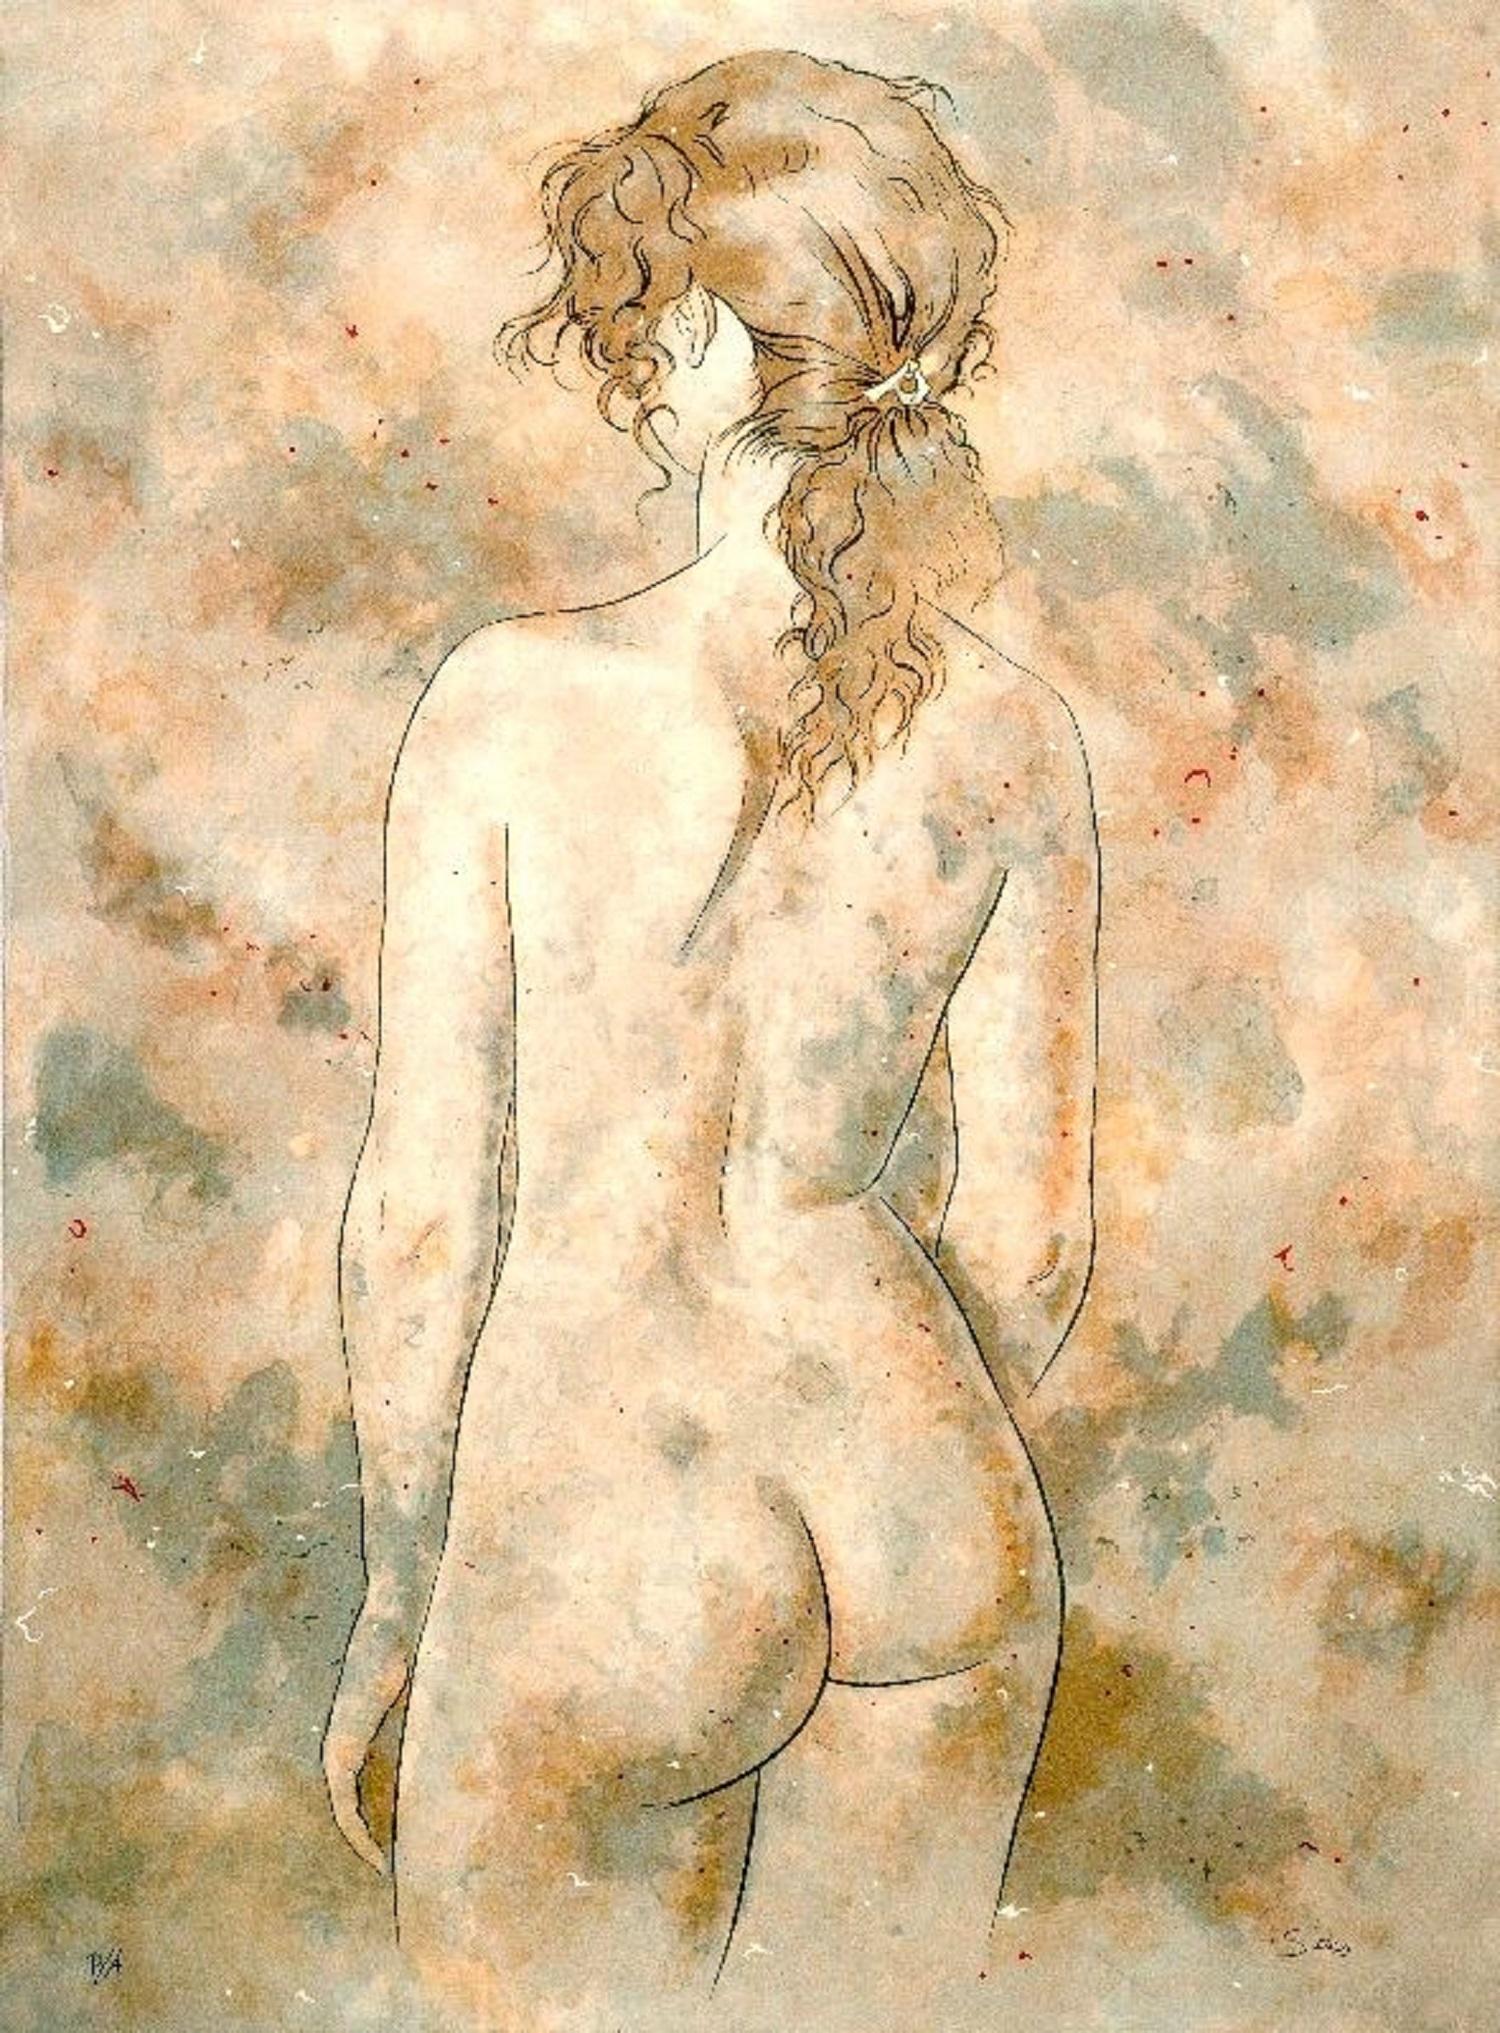 Alexander Siches (Spanien, 1927-2009)
Tossa", 1983
Lithographie auf Papier
30 x 22,1 Zoll (76 x 56 cm)
Ungerahmt
ID: SIC1318-008-000
Vom Autor handsigniert